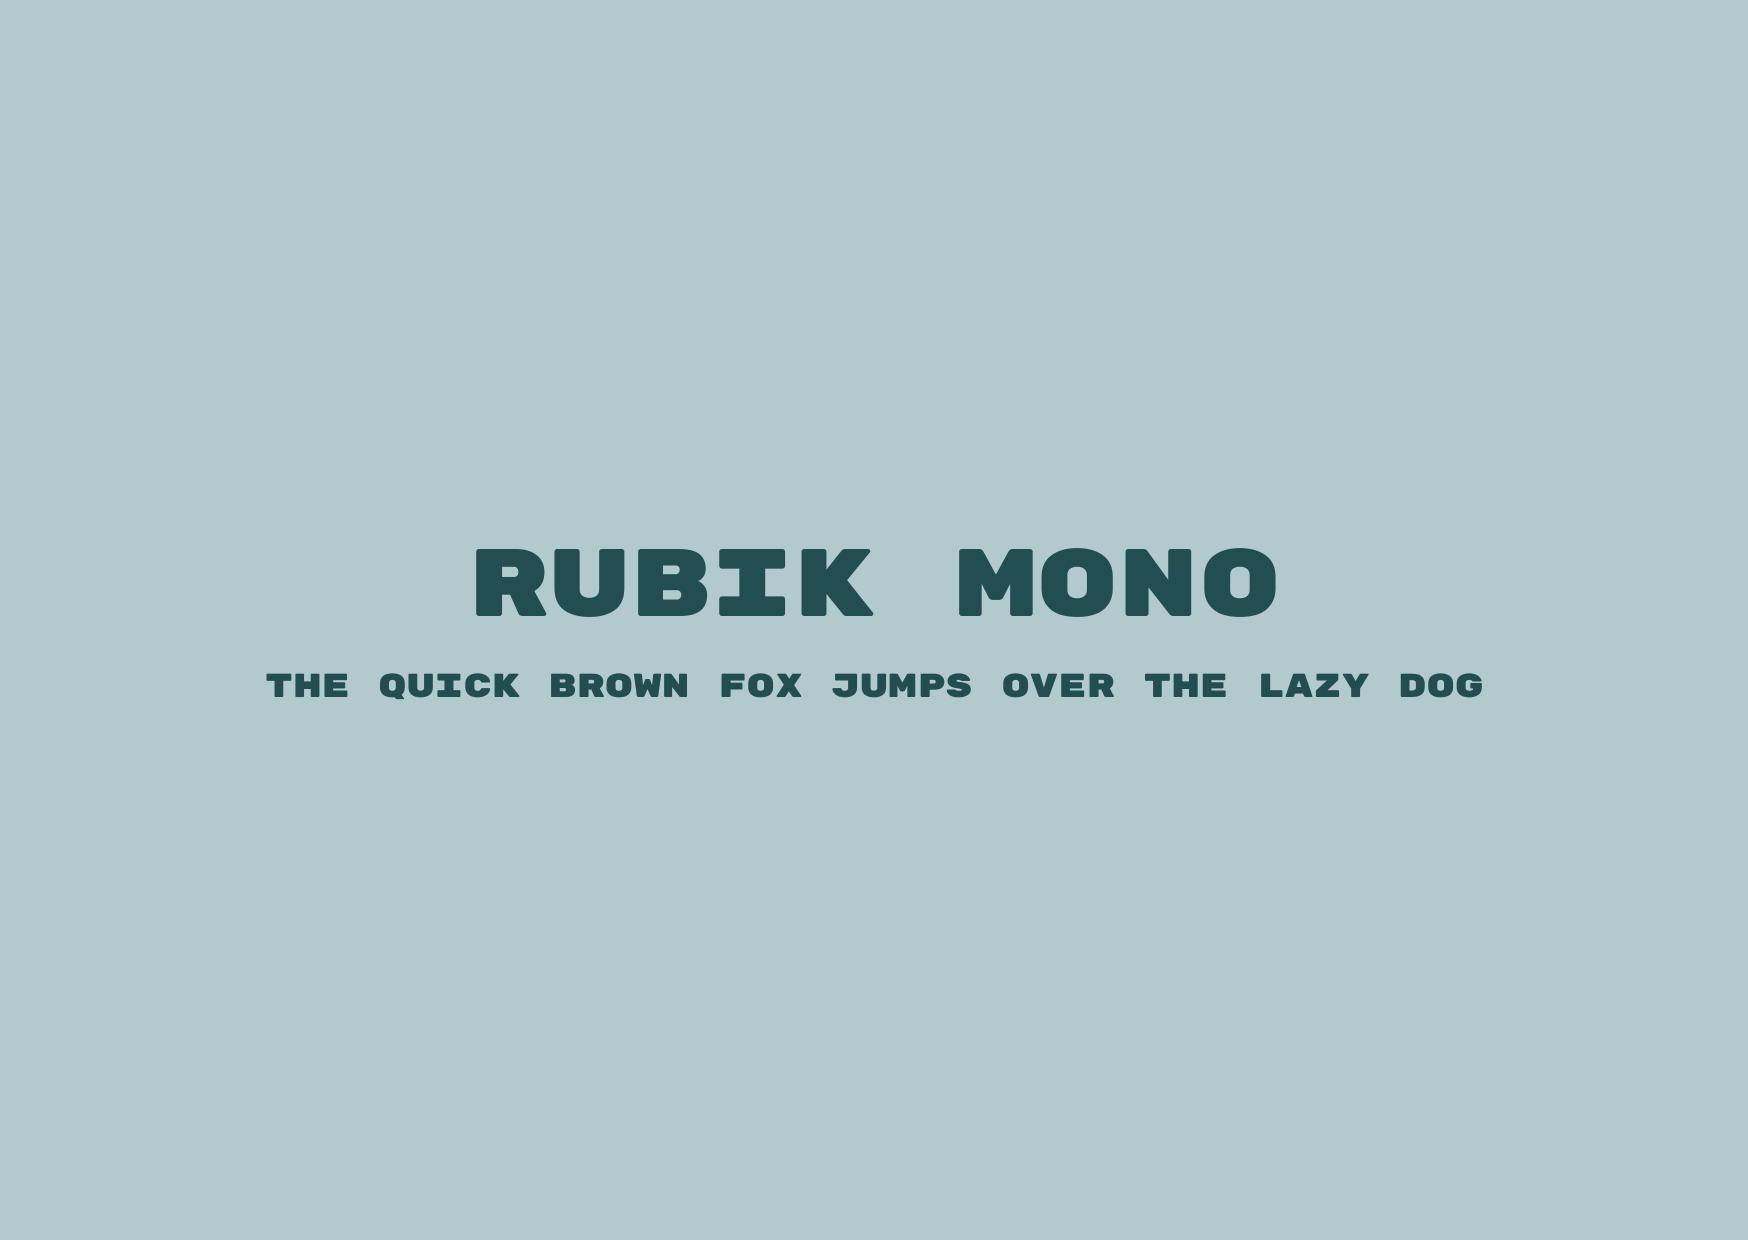 Blogduwebdesign police ecriture geometrique major rubik mono